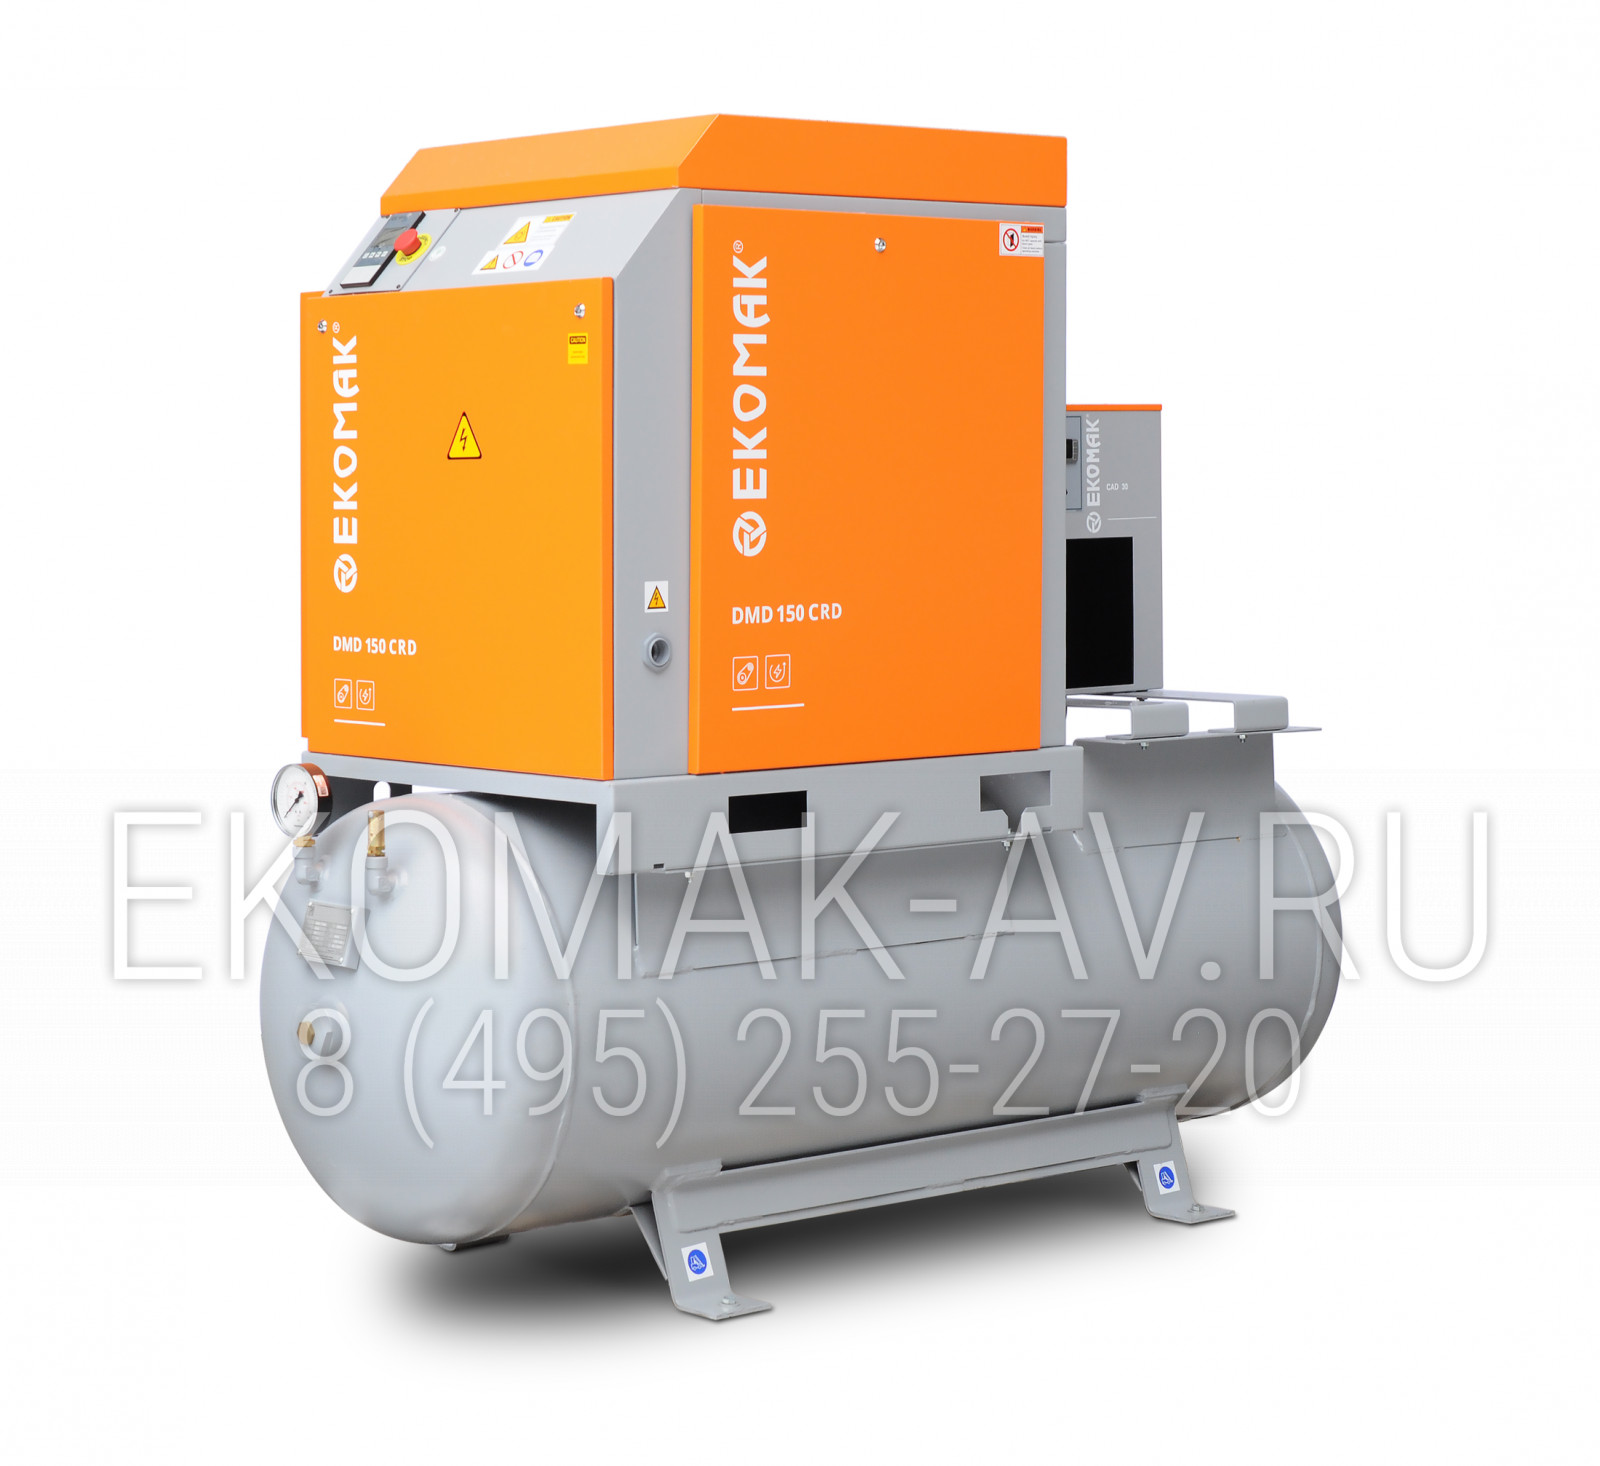 Винтовой компрессор Ekomak DMD 150 CRD 8 LF G+C 500L